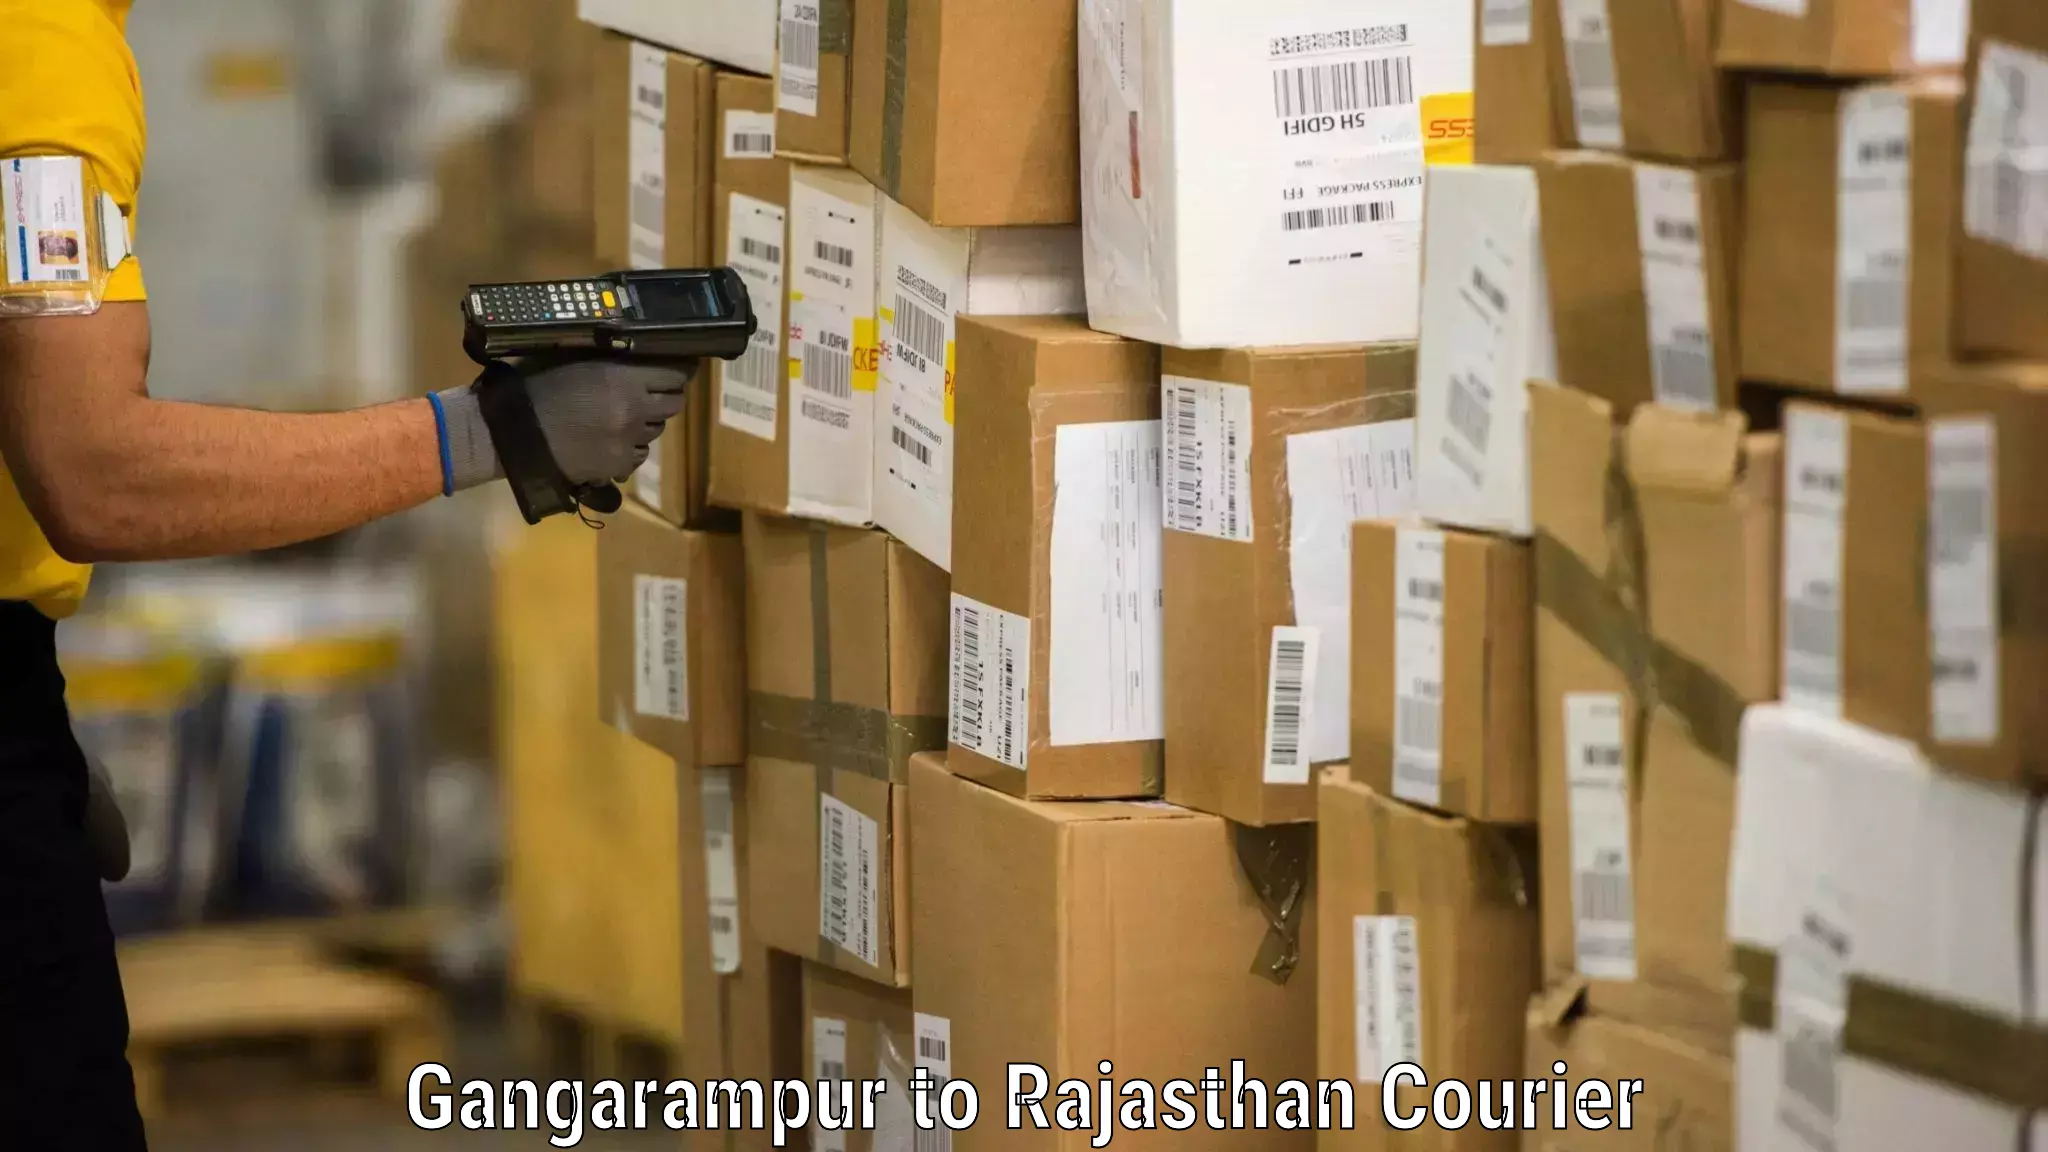 Furniture transport solutions Gangarampur to Rajasthan